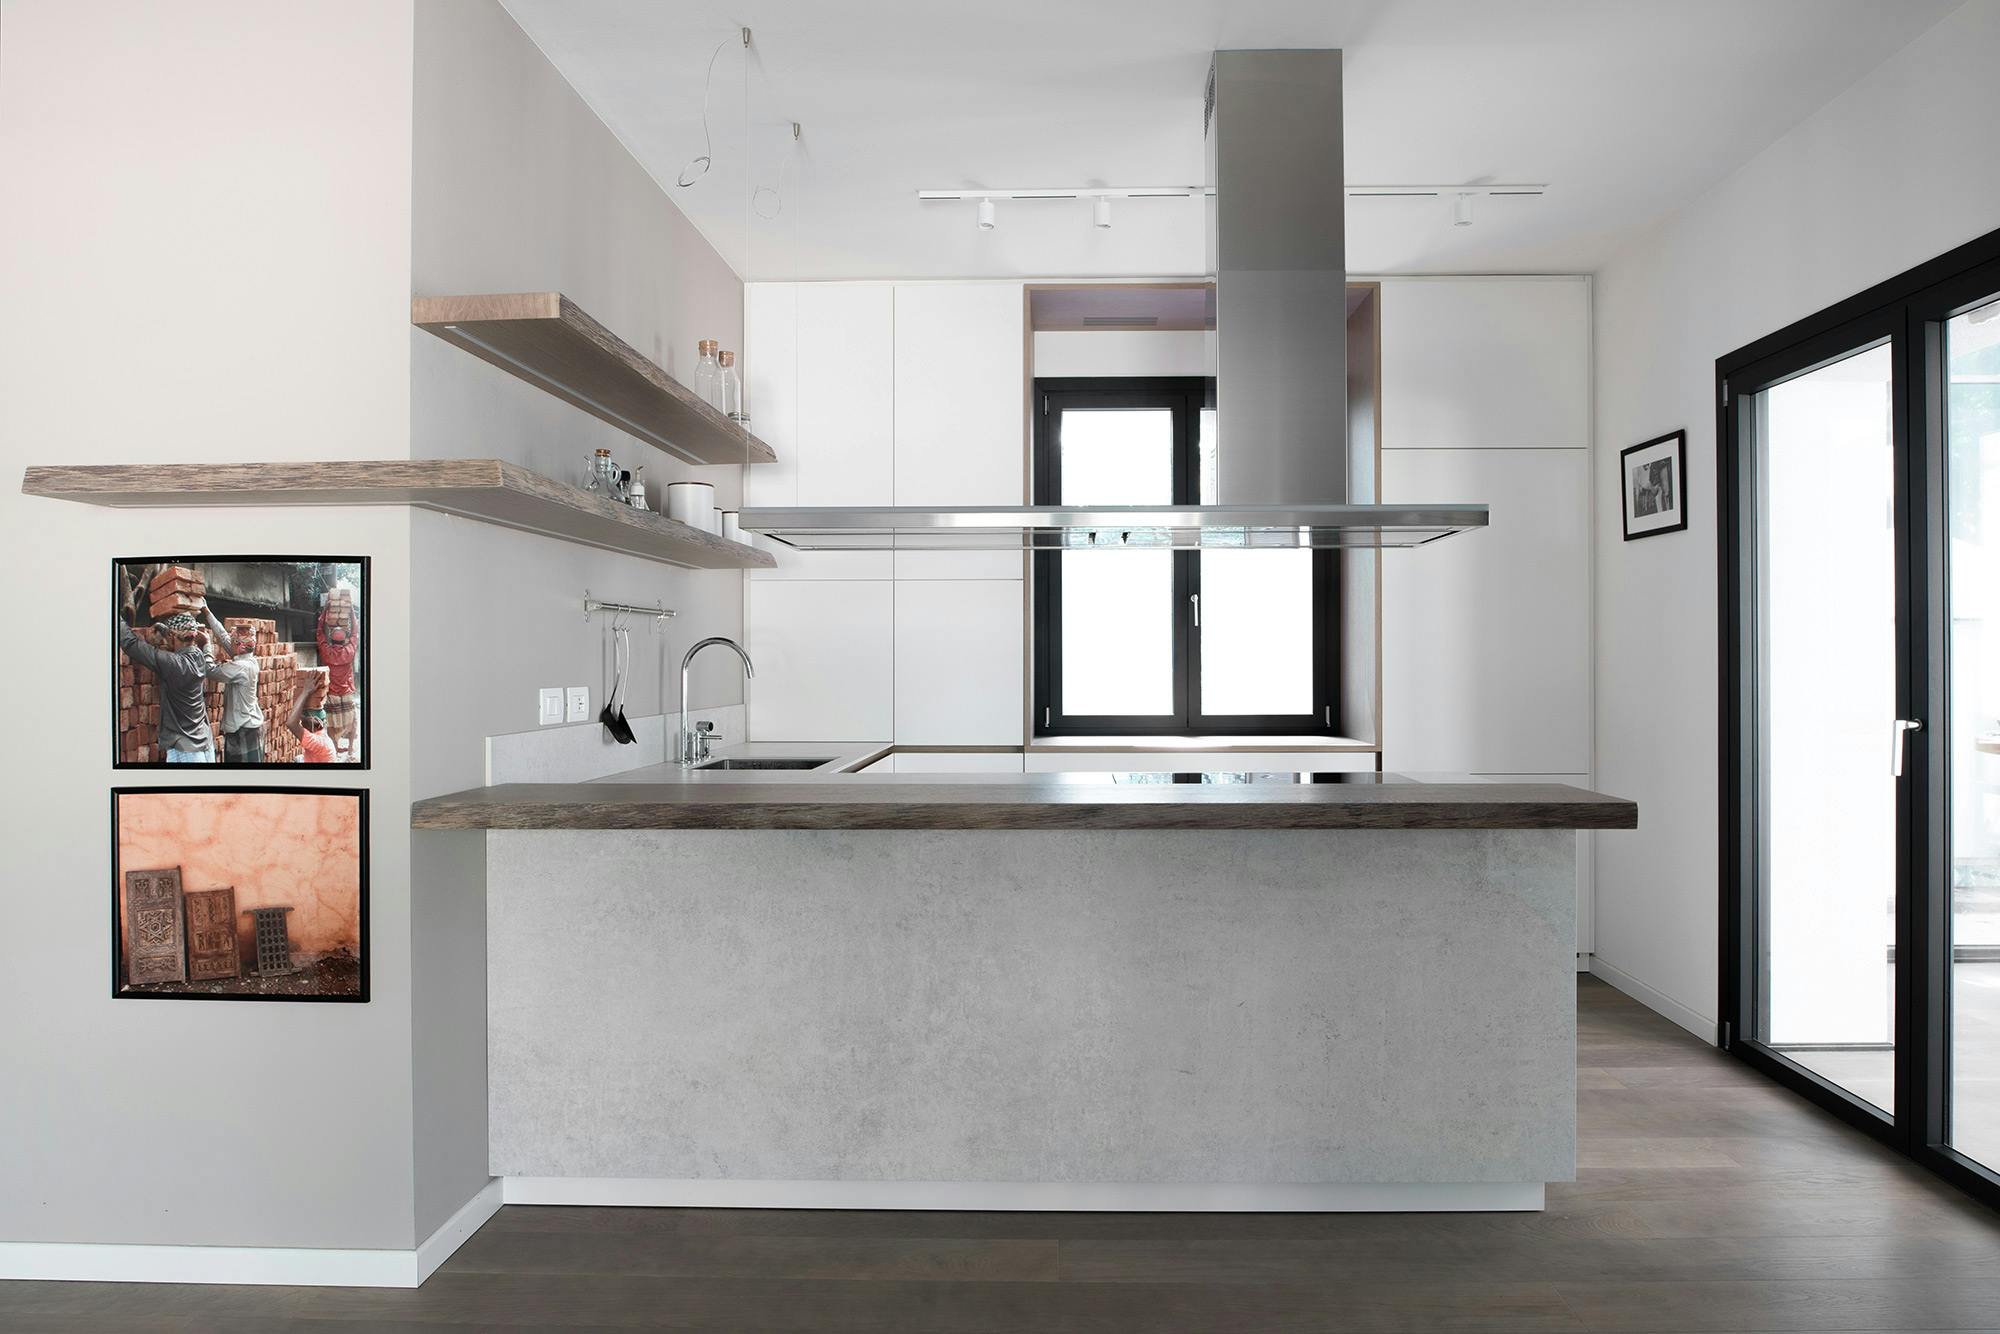 Numero immagine 46 della sezione corrente di Professional features for a domestic kitchen worktop di Cosentino Italia